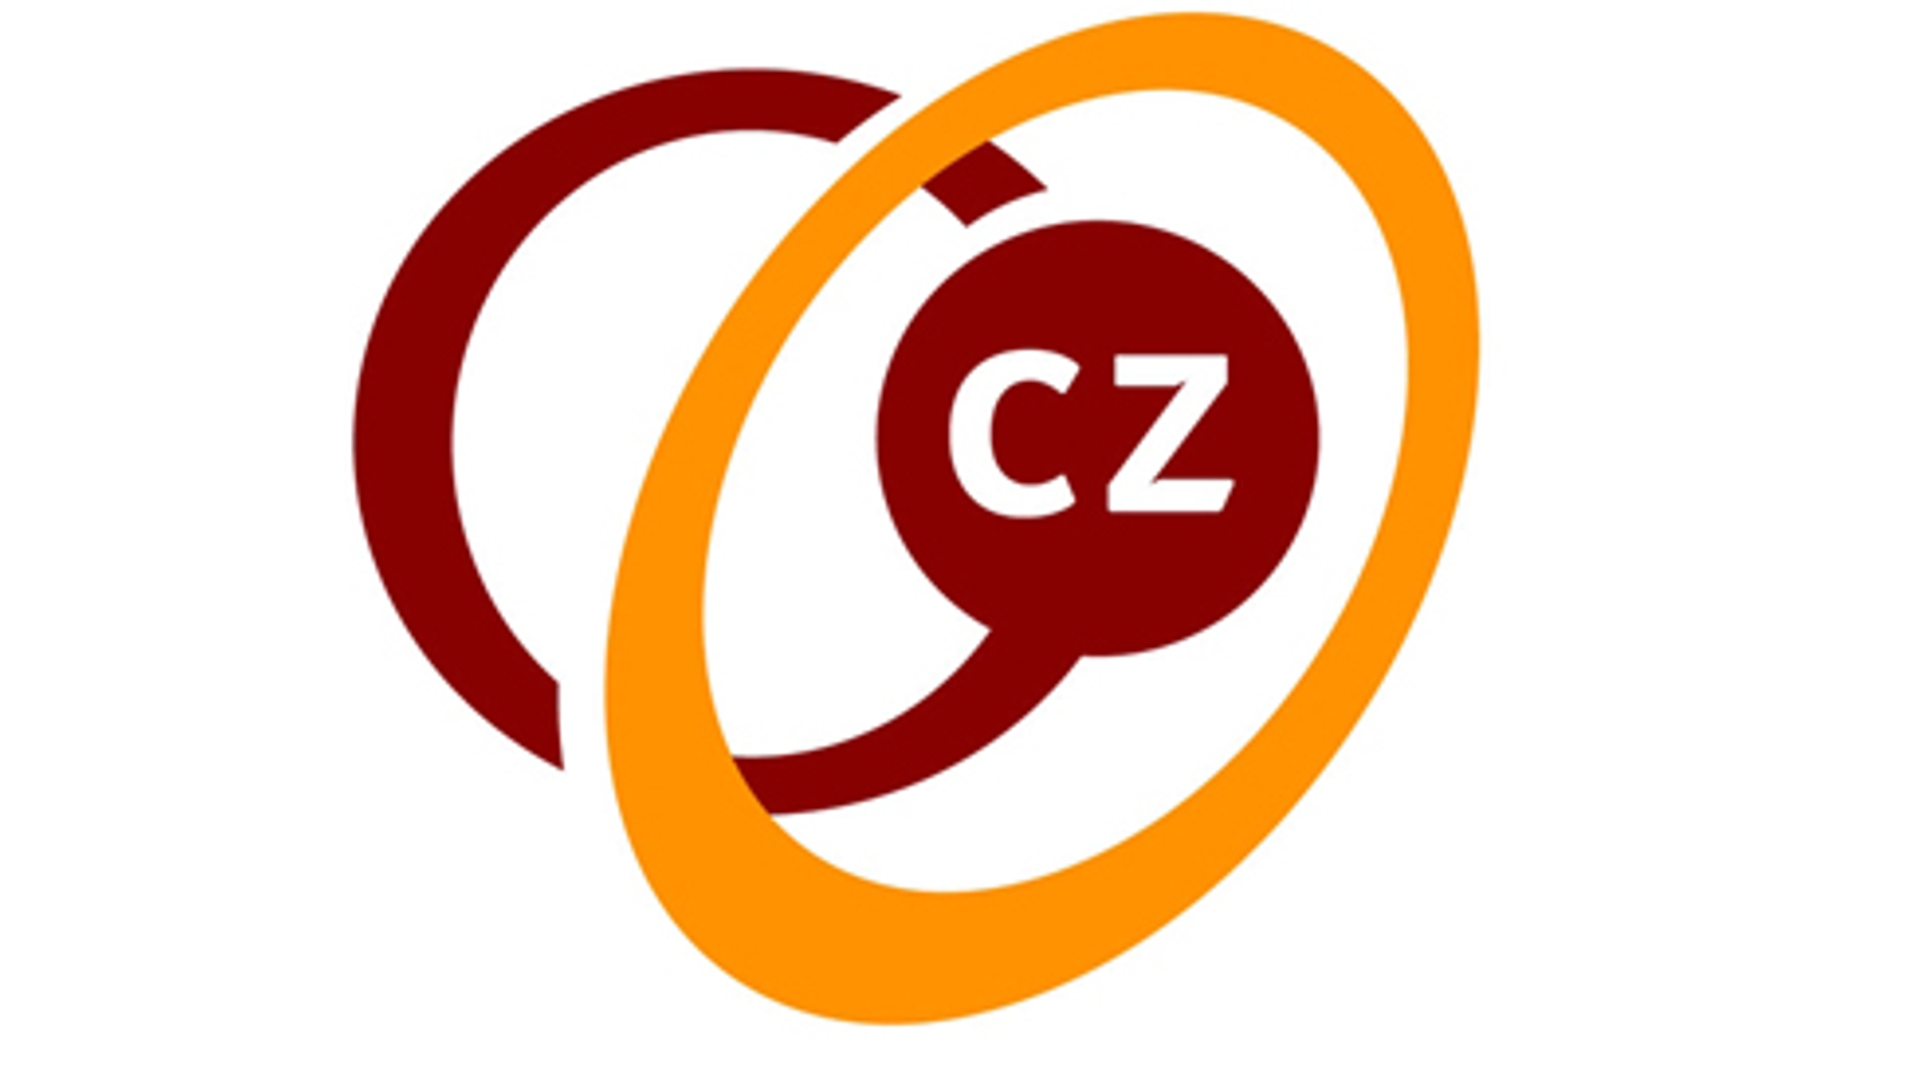 logo_cz.jpg